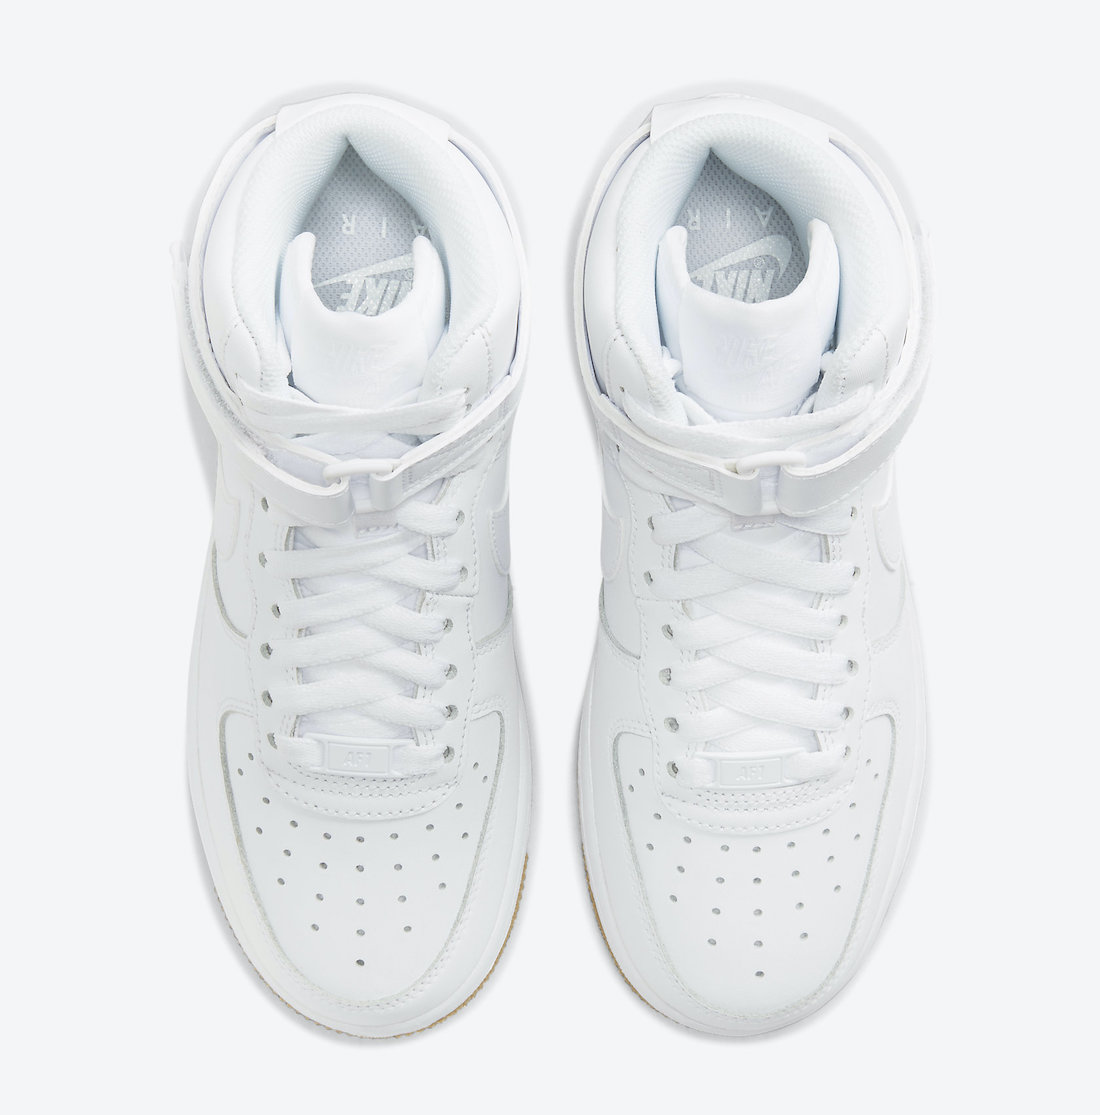 Nike Air Force 1 High White Gum DH1058-100 Release Date